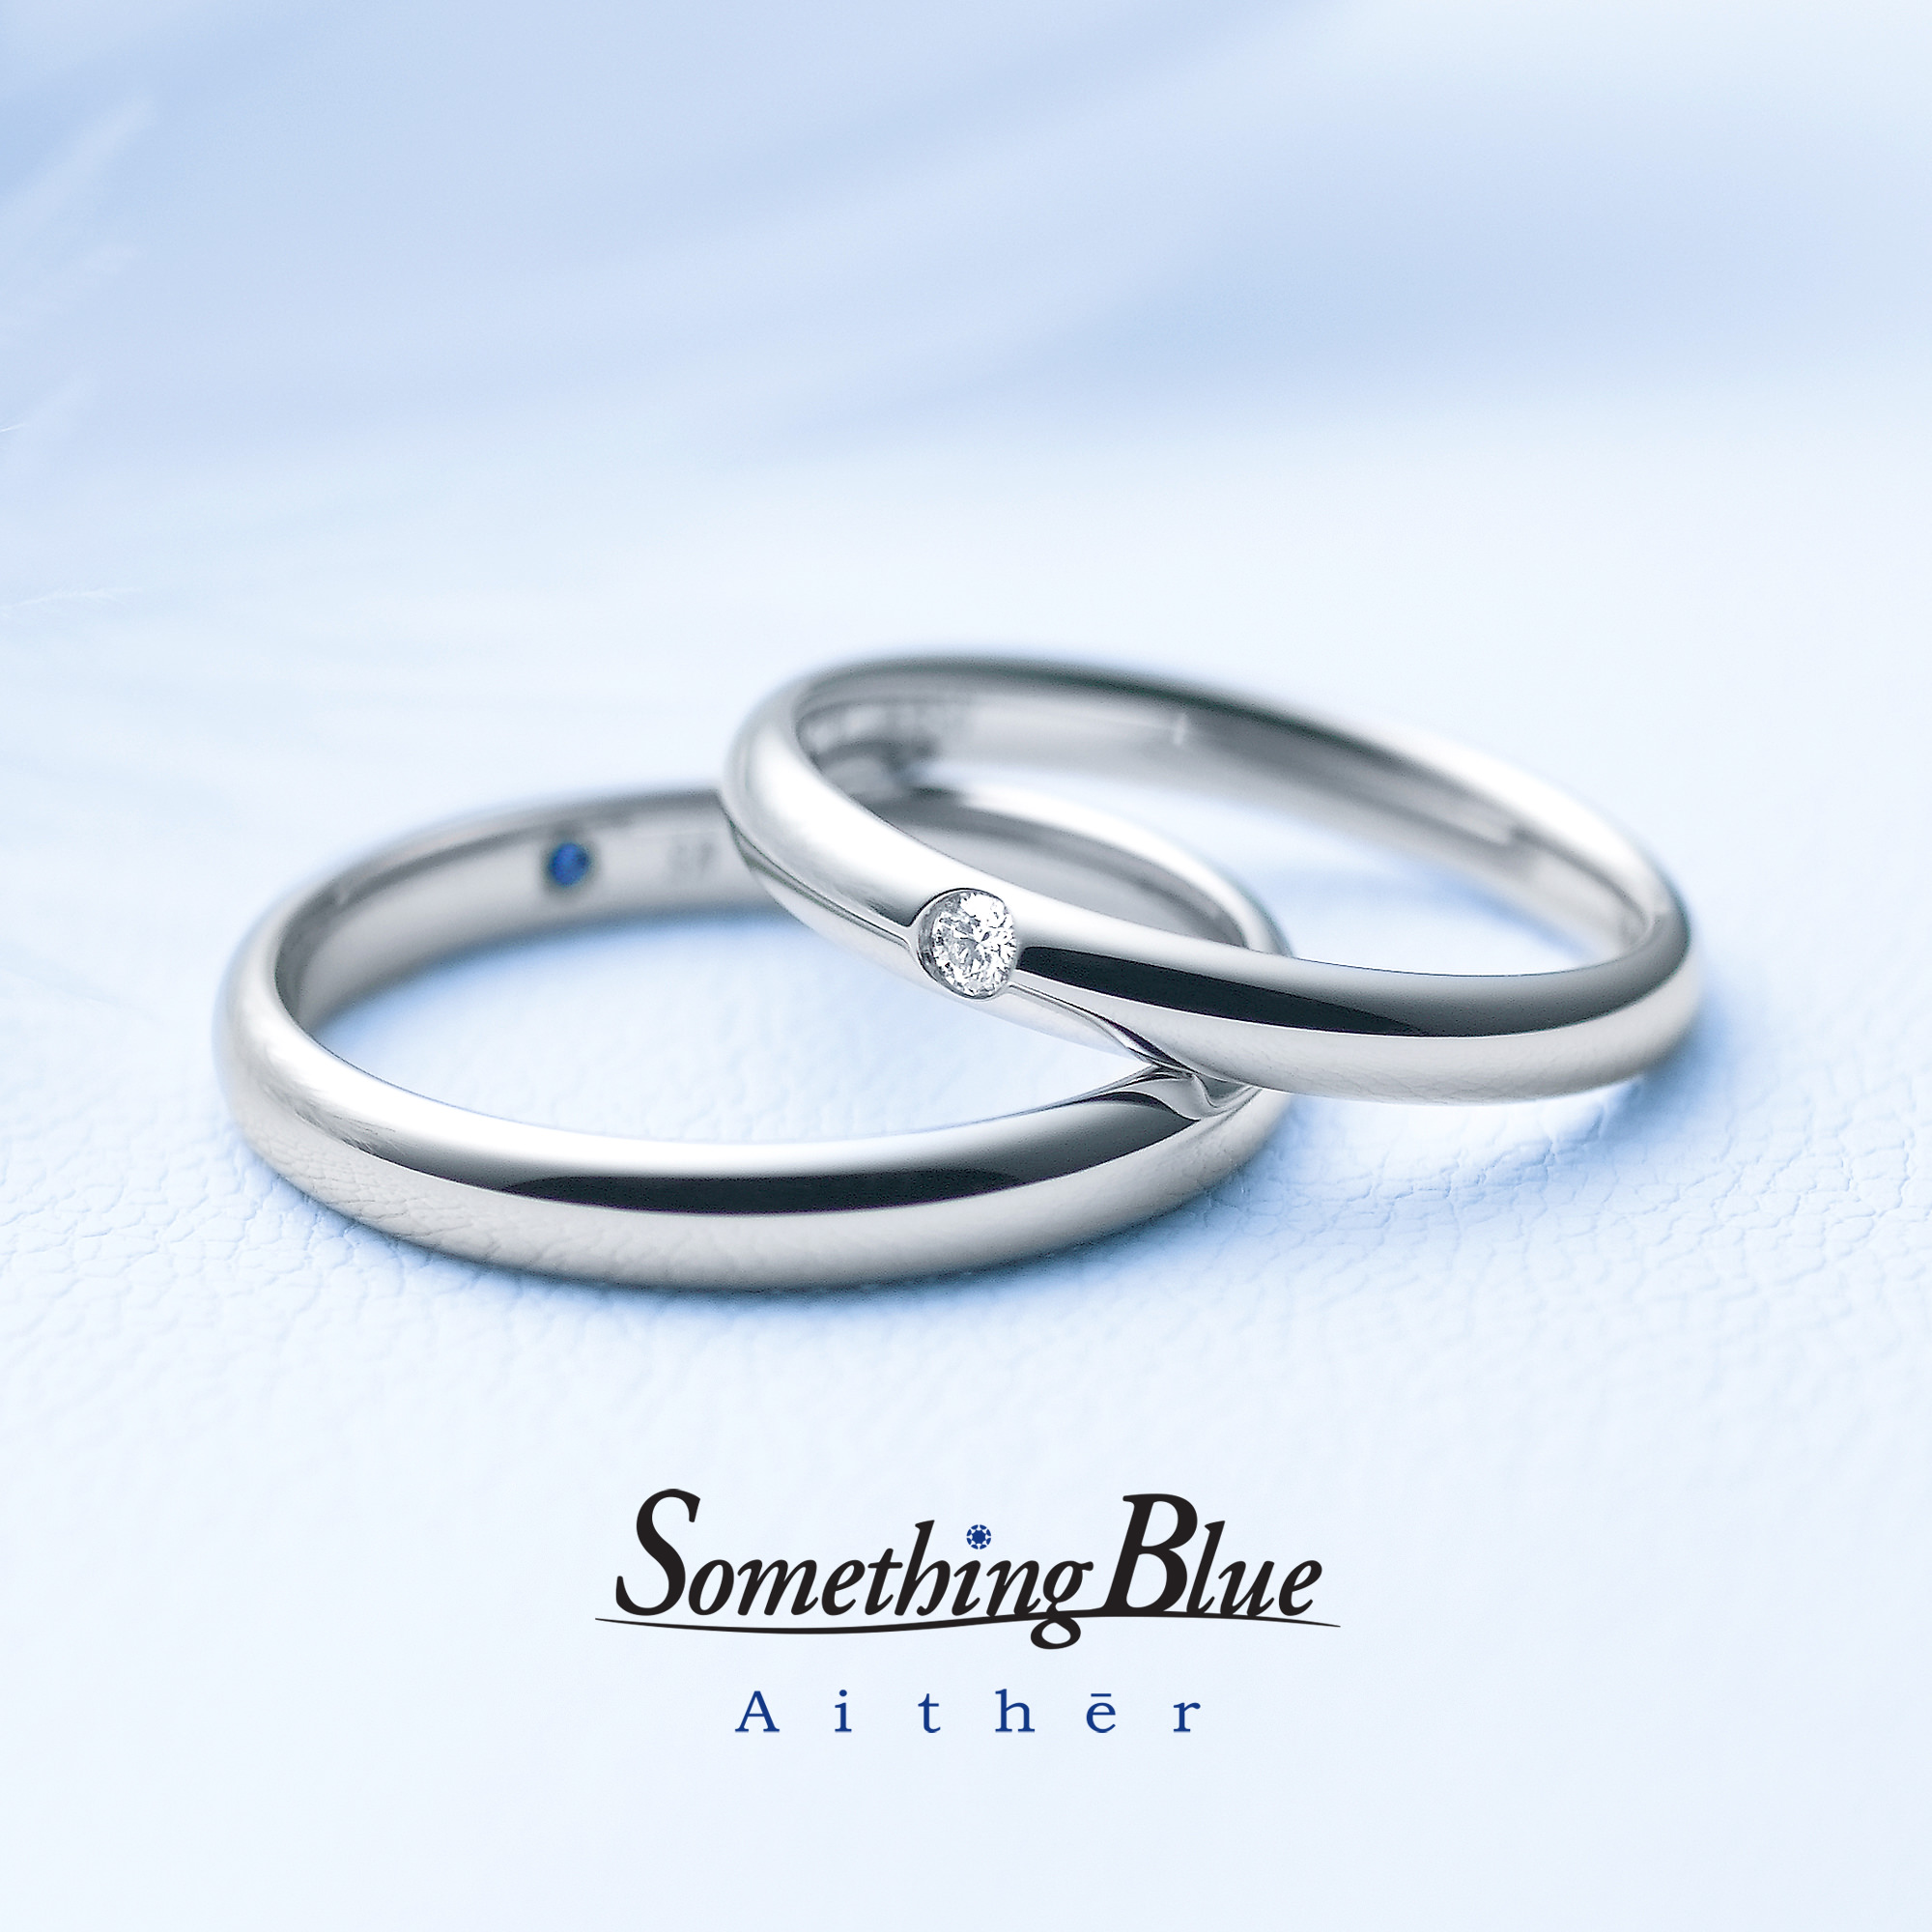 広島県広島広島市福山福山市のVANillAヴァニラの結婚指輪マリッジリングのSomething blue サムシングブルー hopeful ホープフル